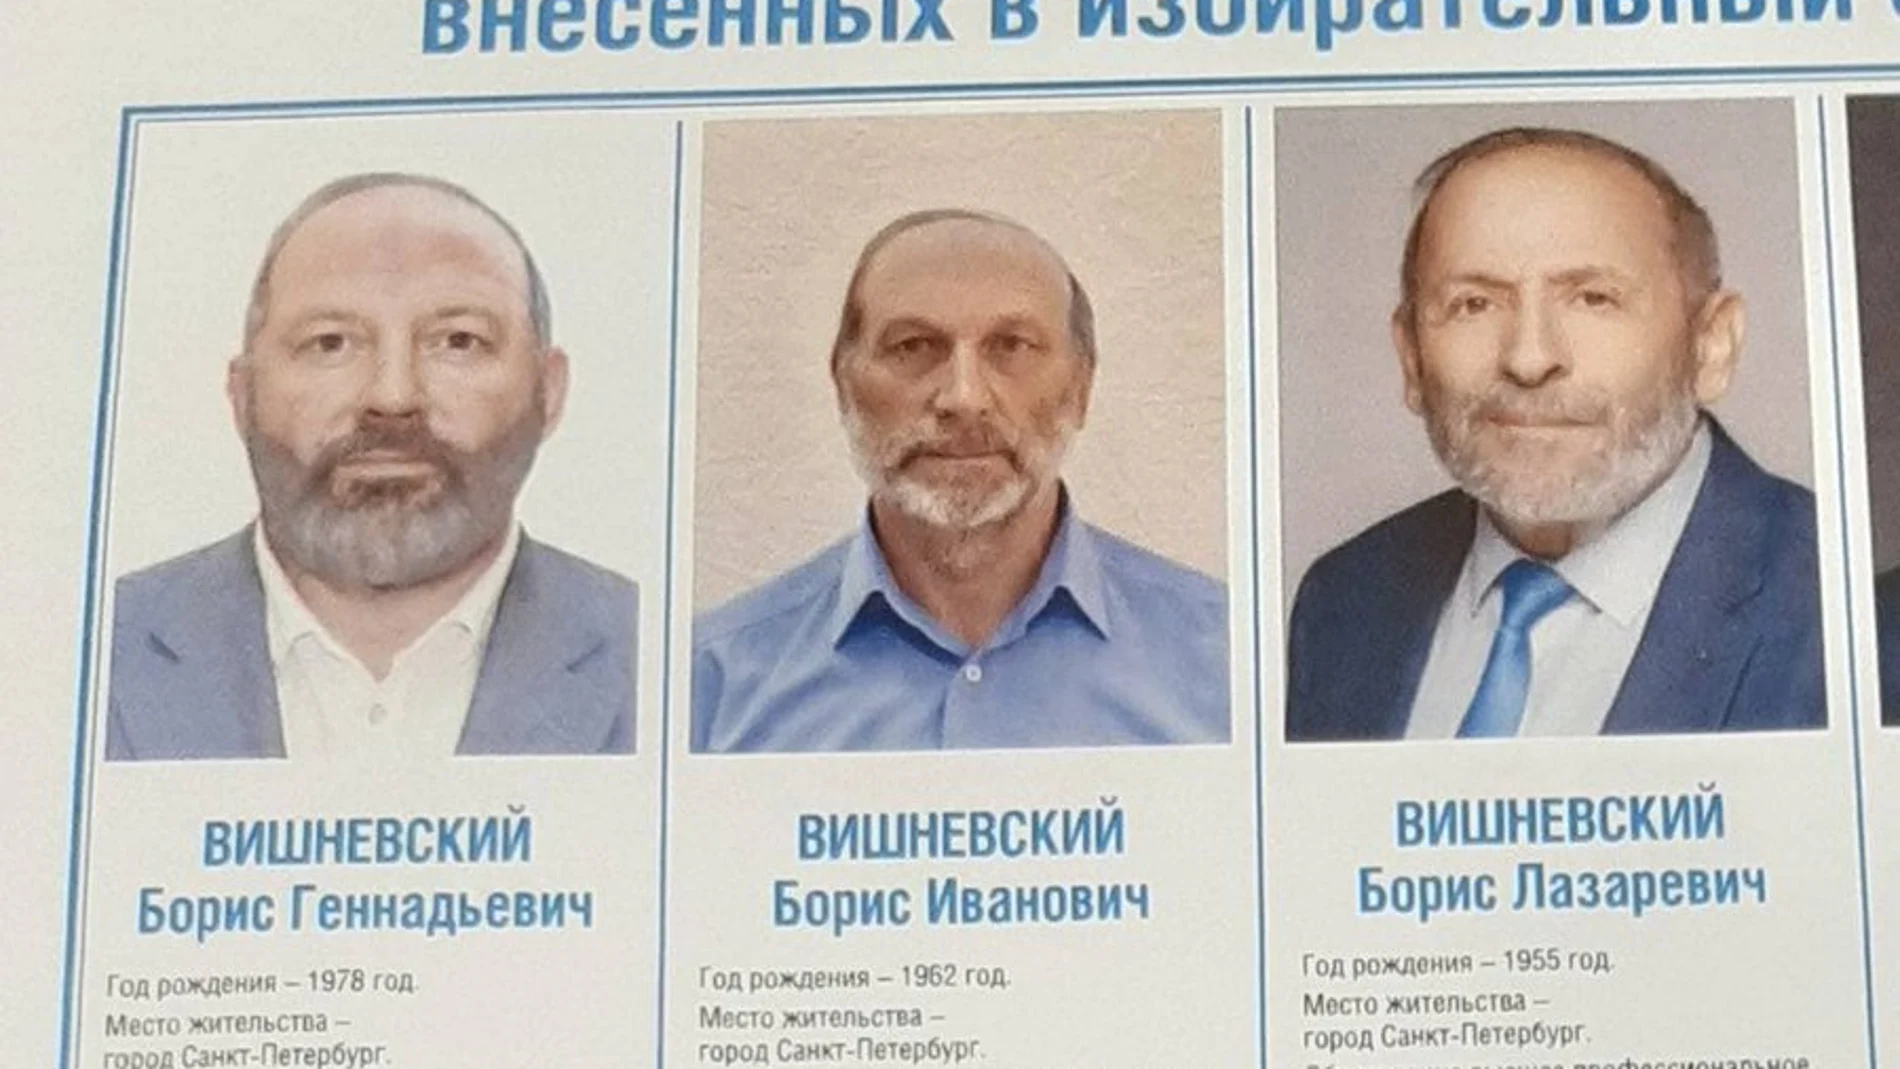 Vishnevsky es candidato del Partido Liberal, y Bykov tuvo que transformar su aspecto para quitarle votos al candidato opositor al régimen ruso